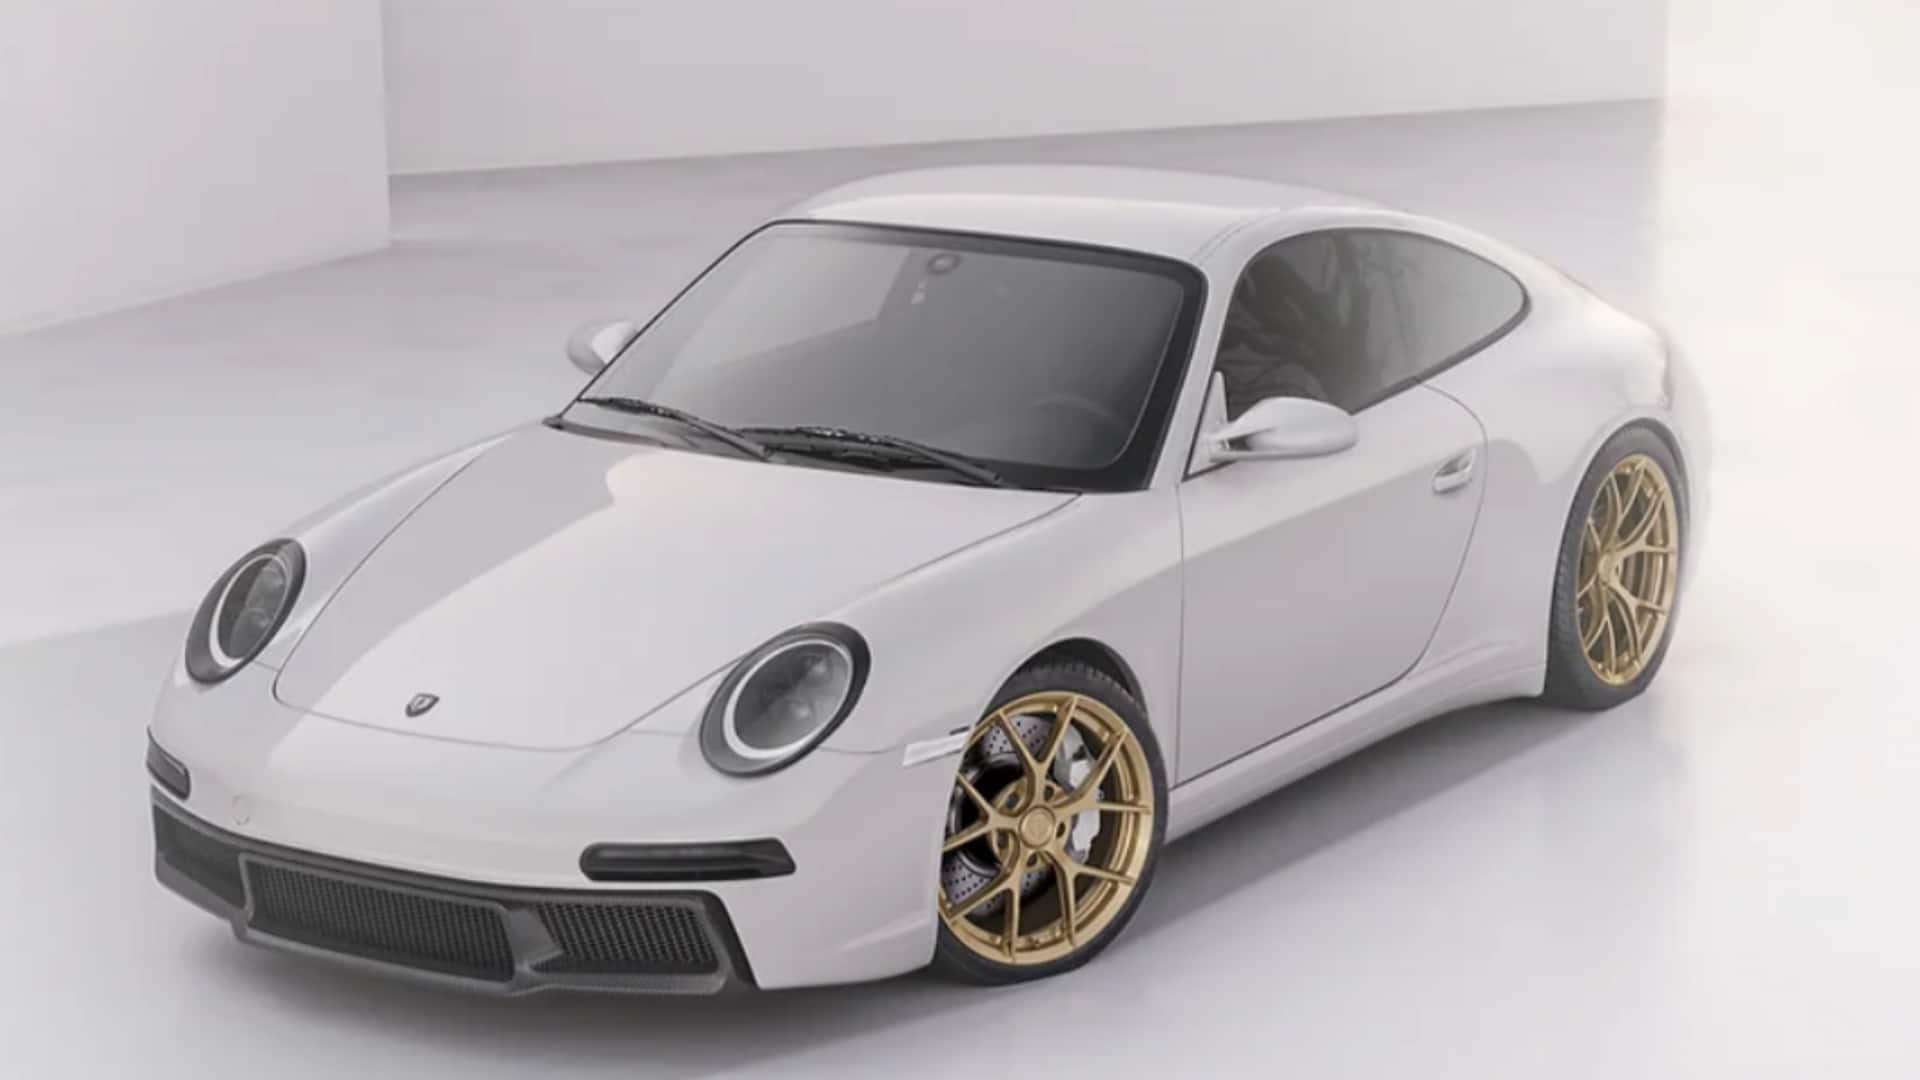 Ultra-rare Edit g11 debuts as a bespoke Porsche 911